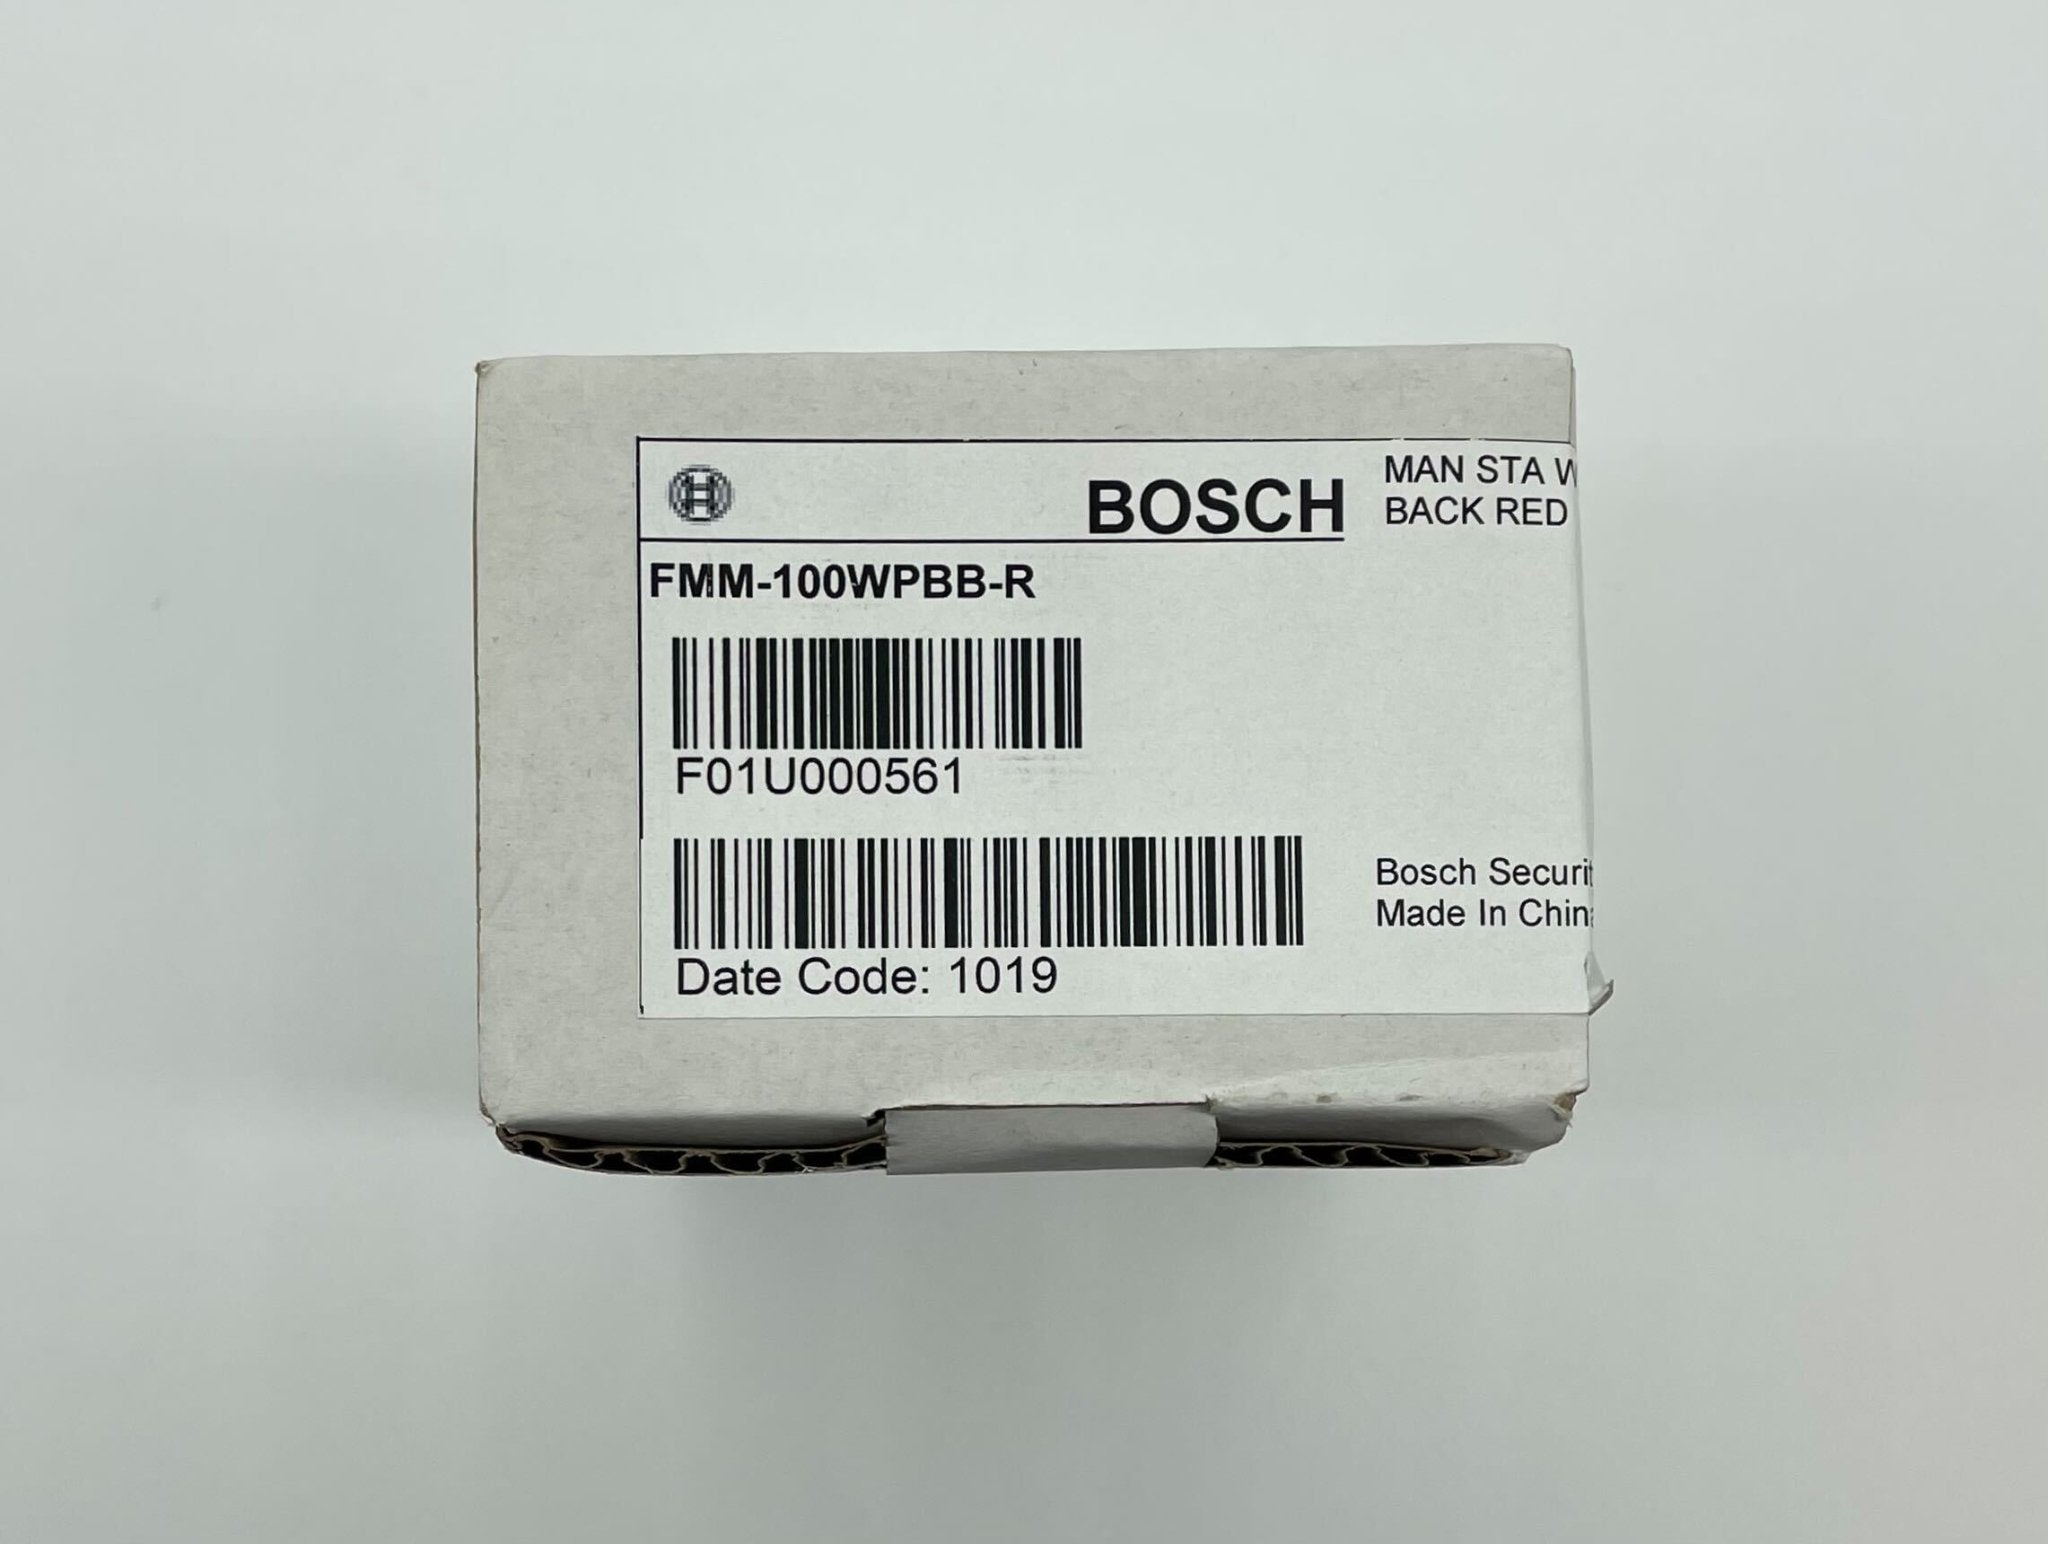 Bosch FMM-100WPBB-R